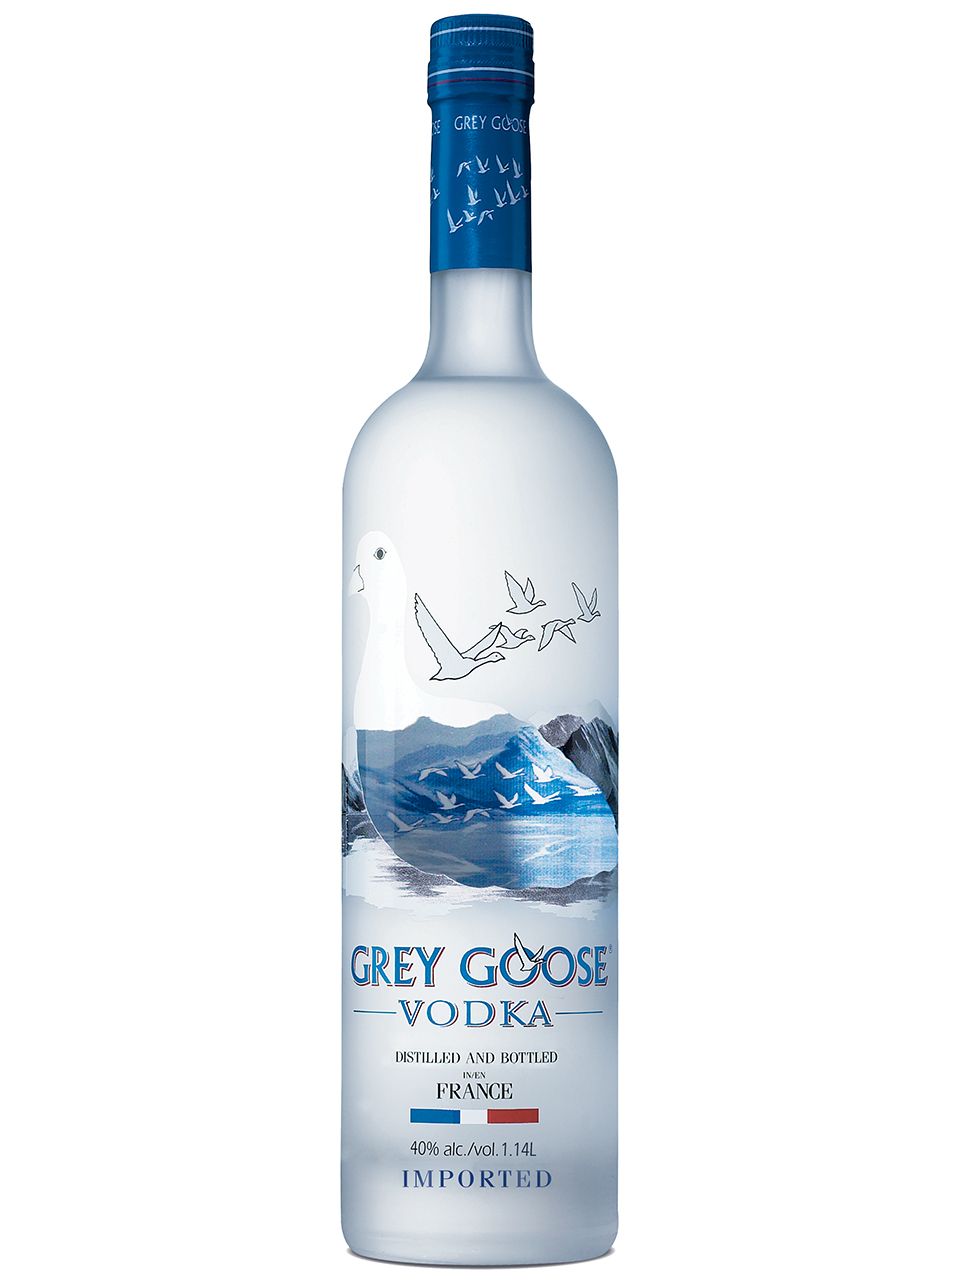 Grey Goose Vodka Newfoundland Labrador Liquor Corporation